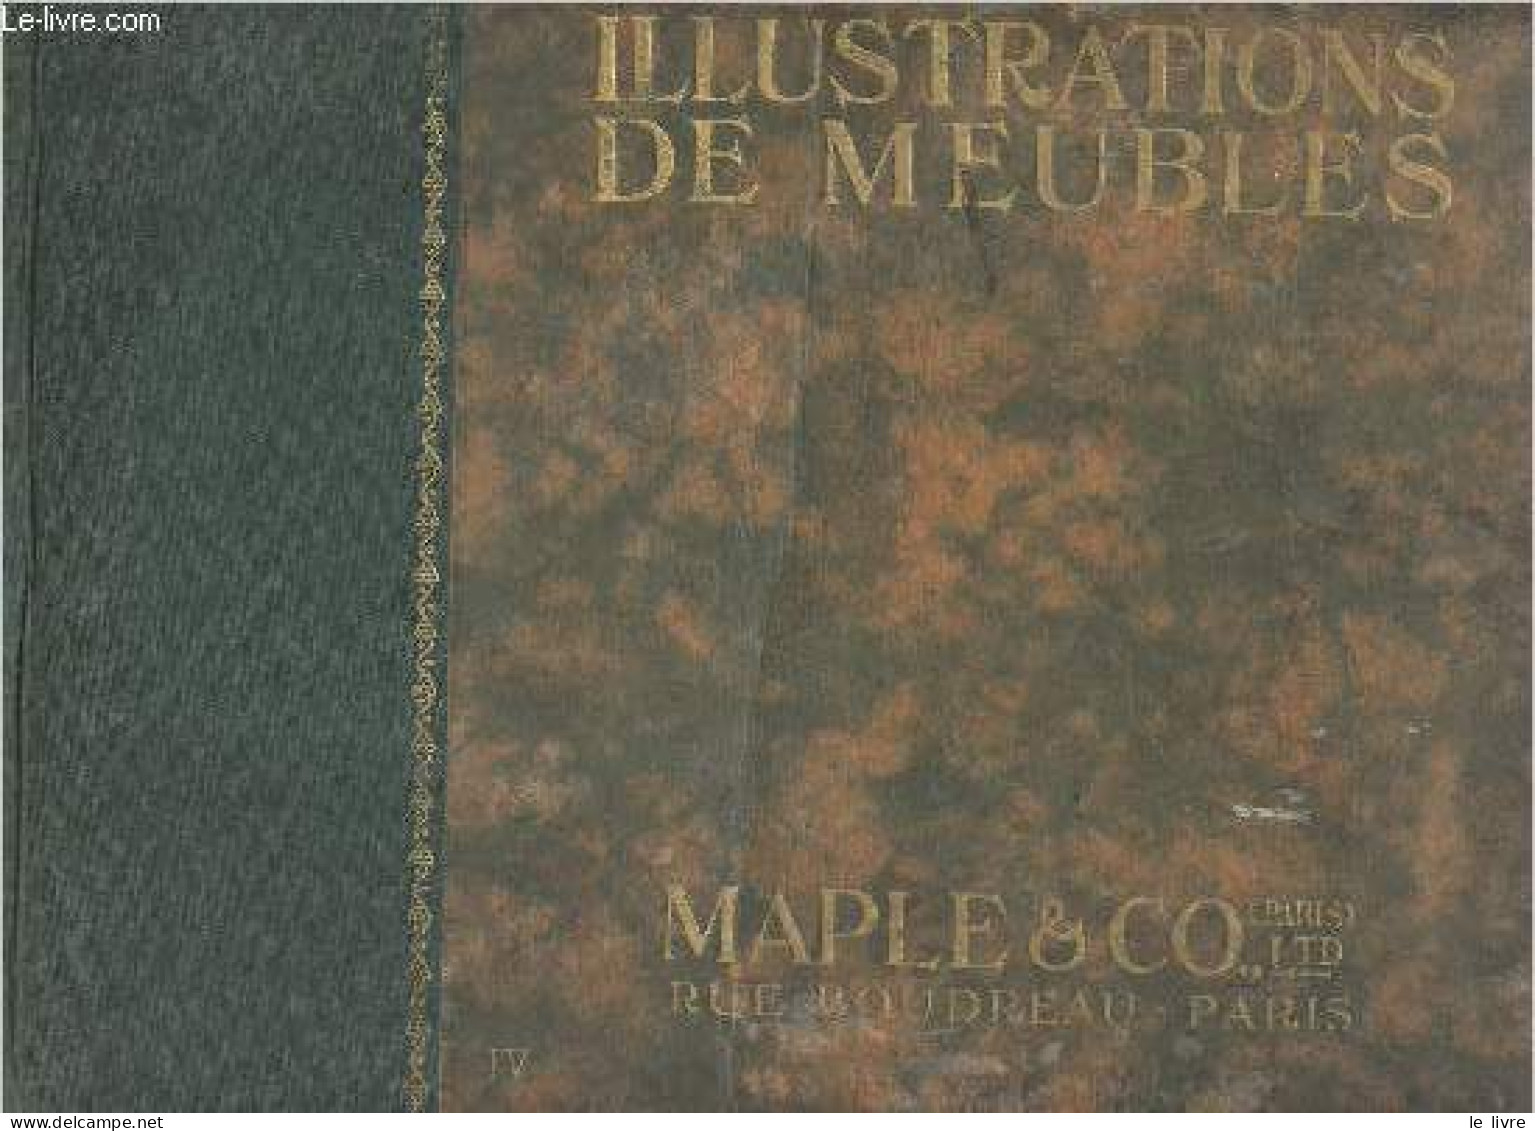 Illustrations De Meubles - Vol. IV - Collectif - 0 - Home Decoration